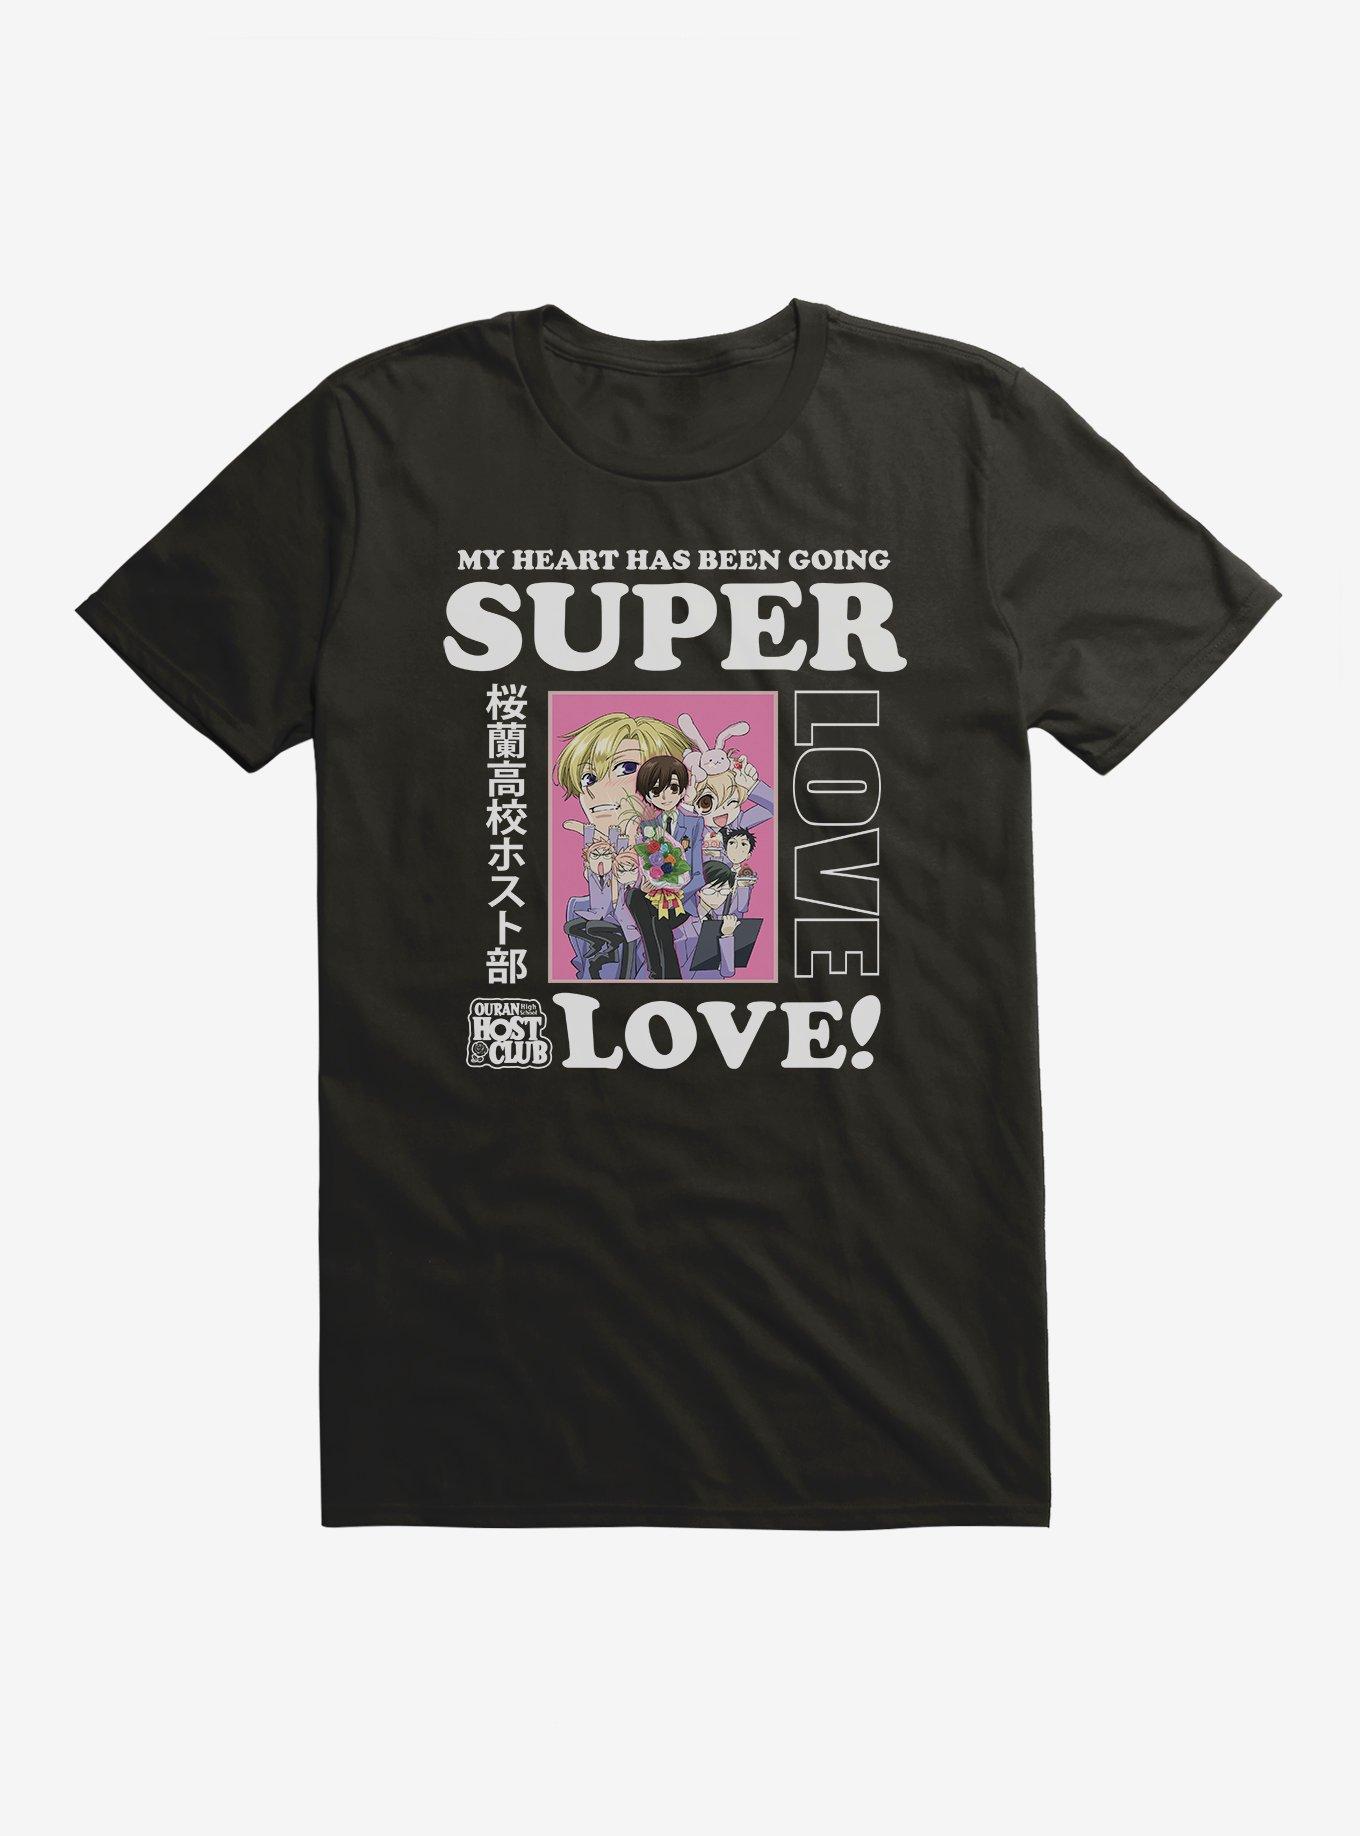 Ouran High School Host Club Super Love T-Shirt